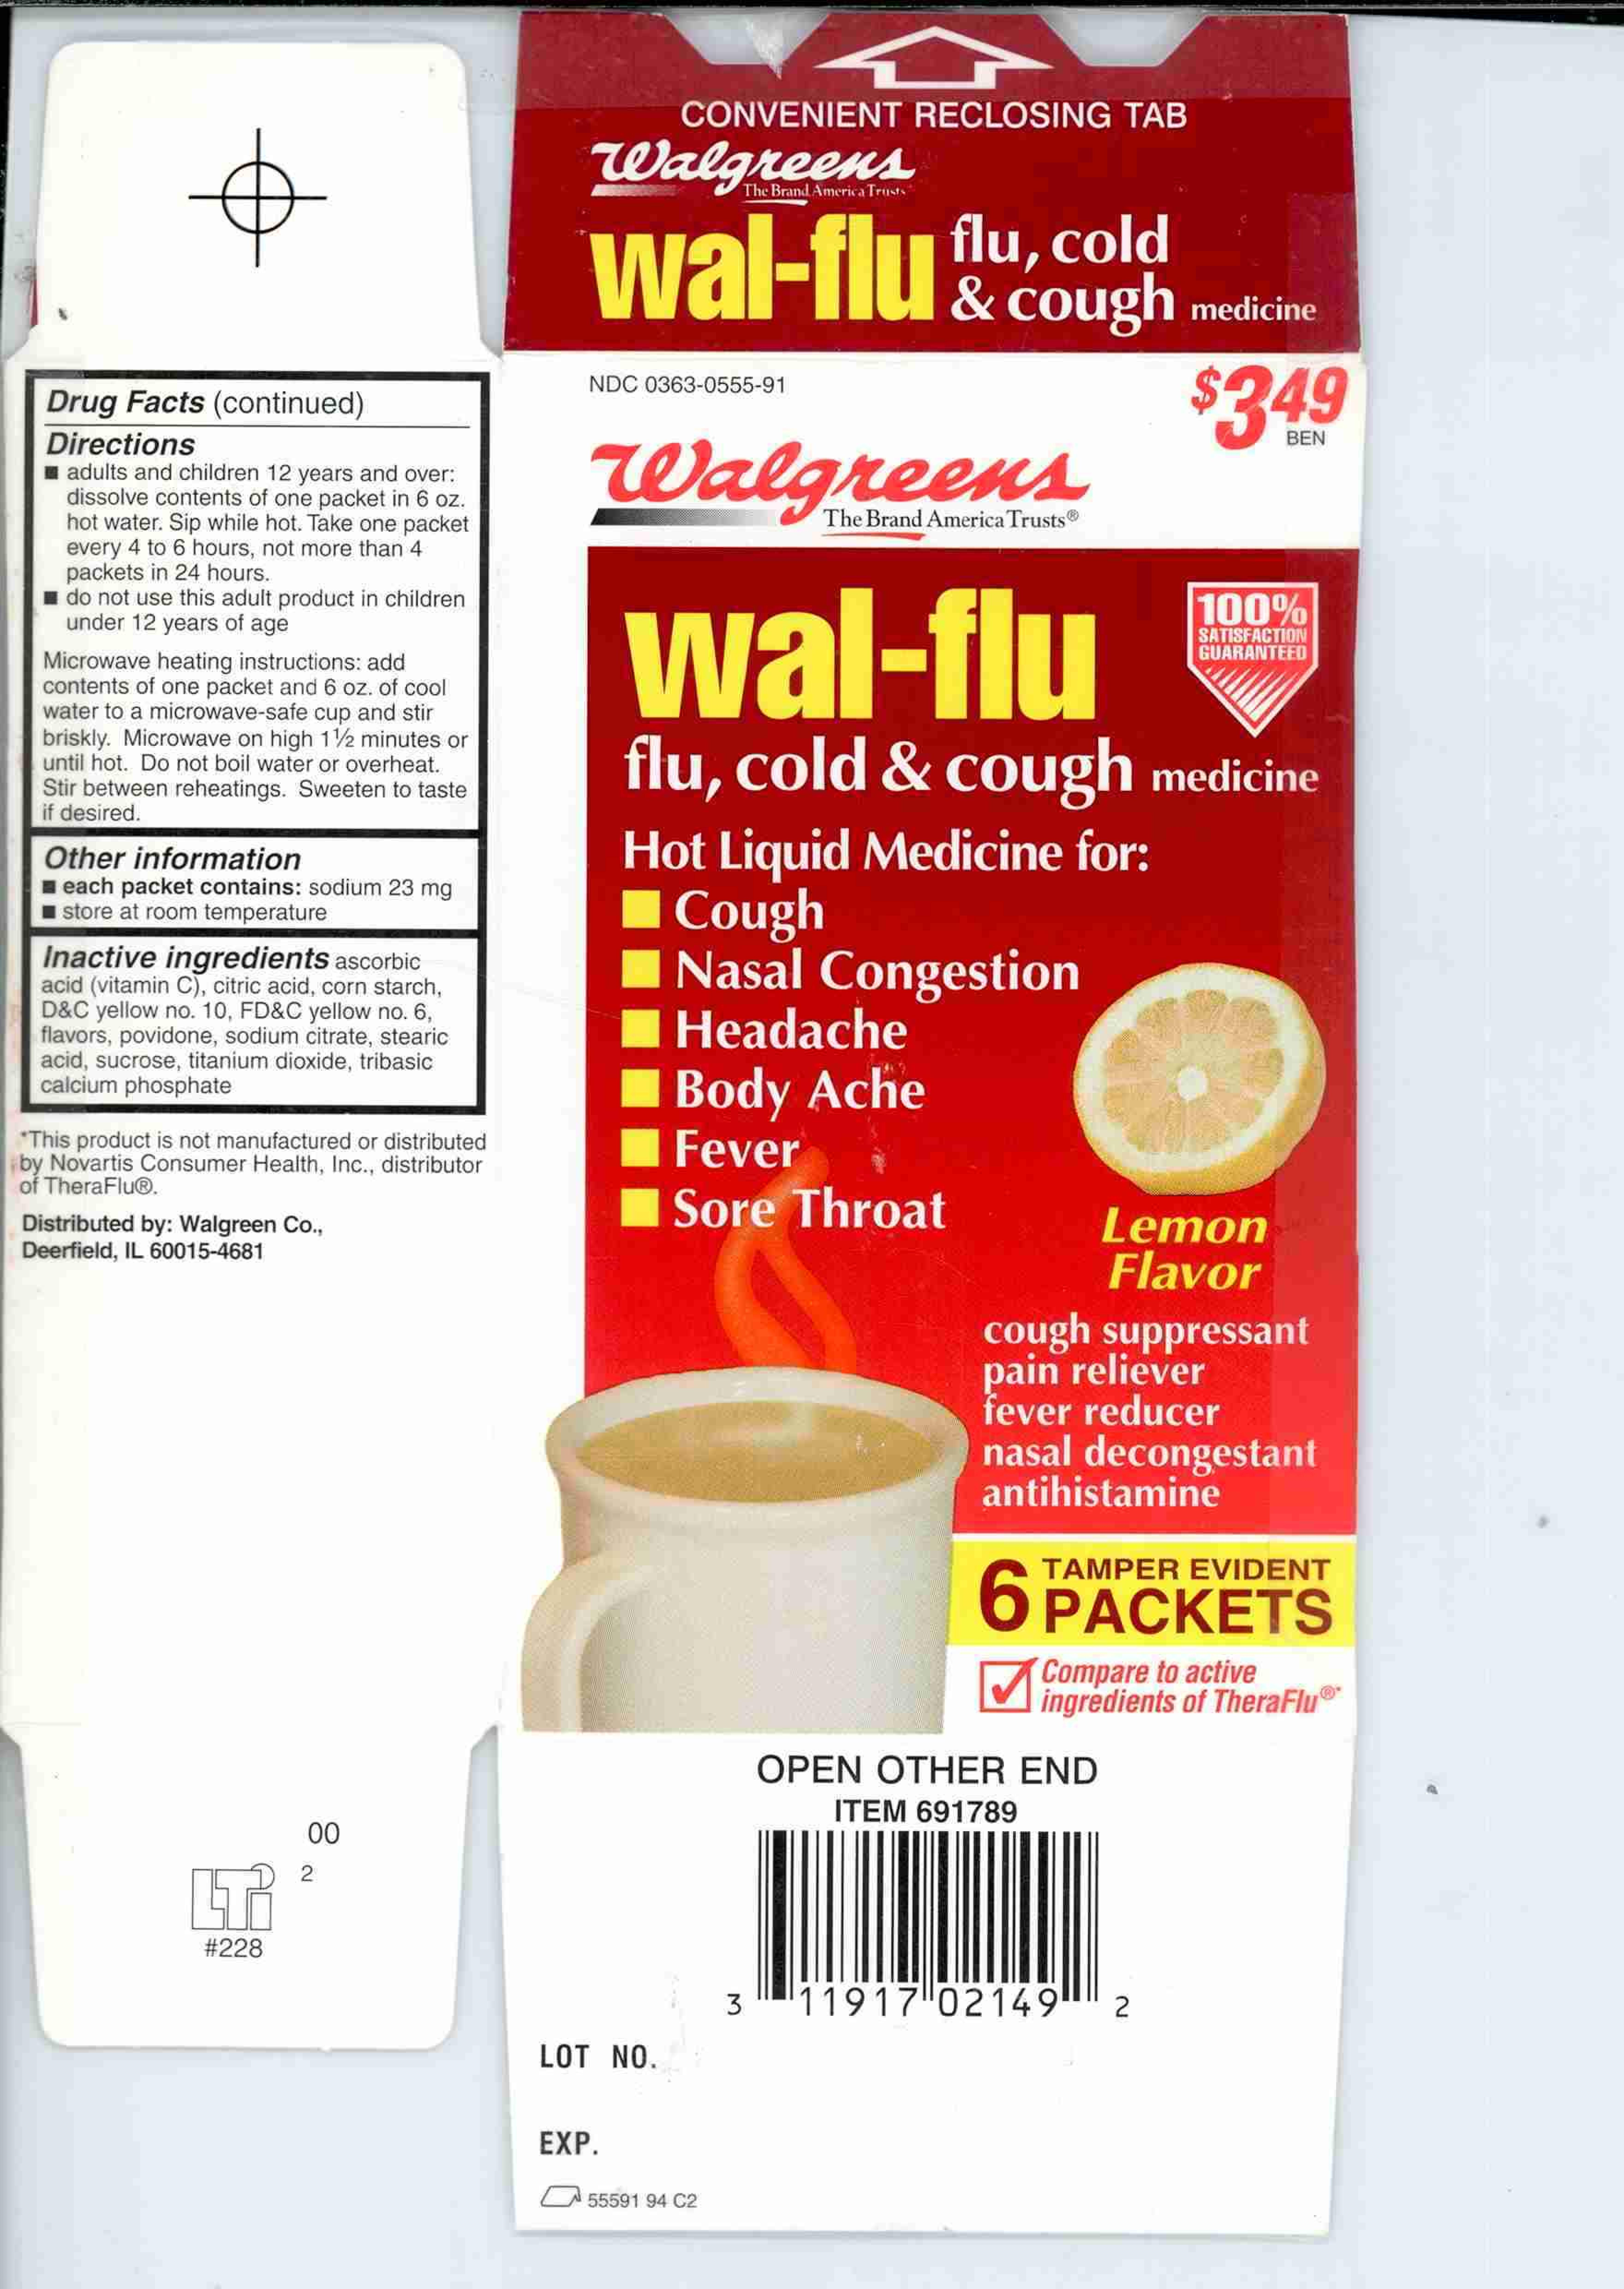  WAL-FLU